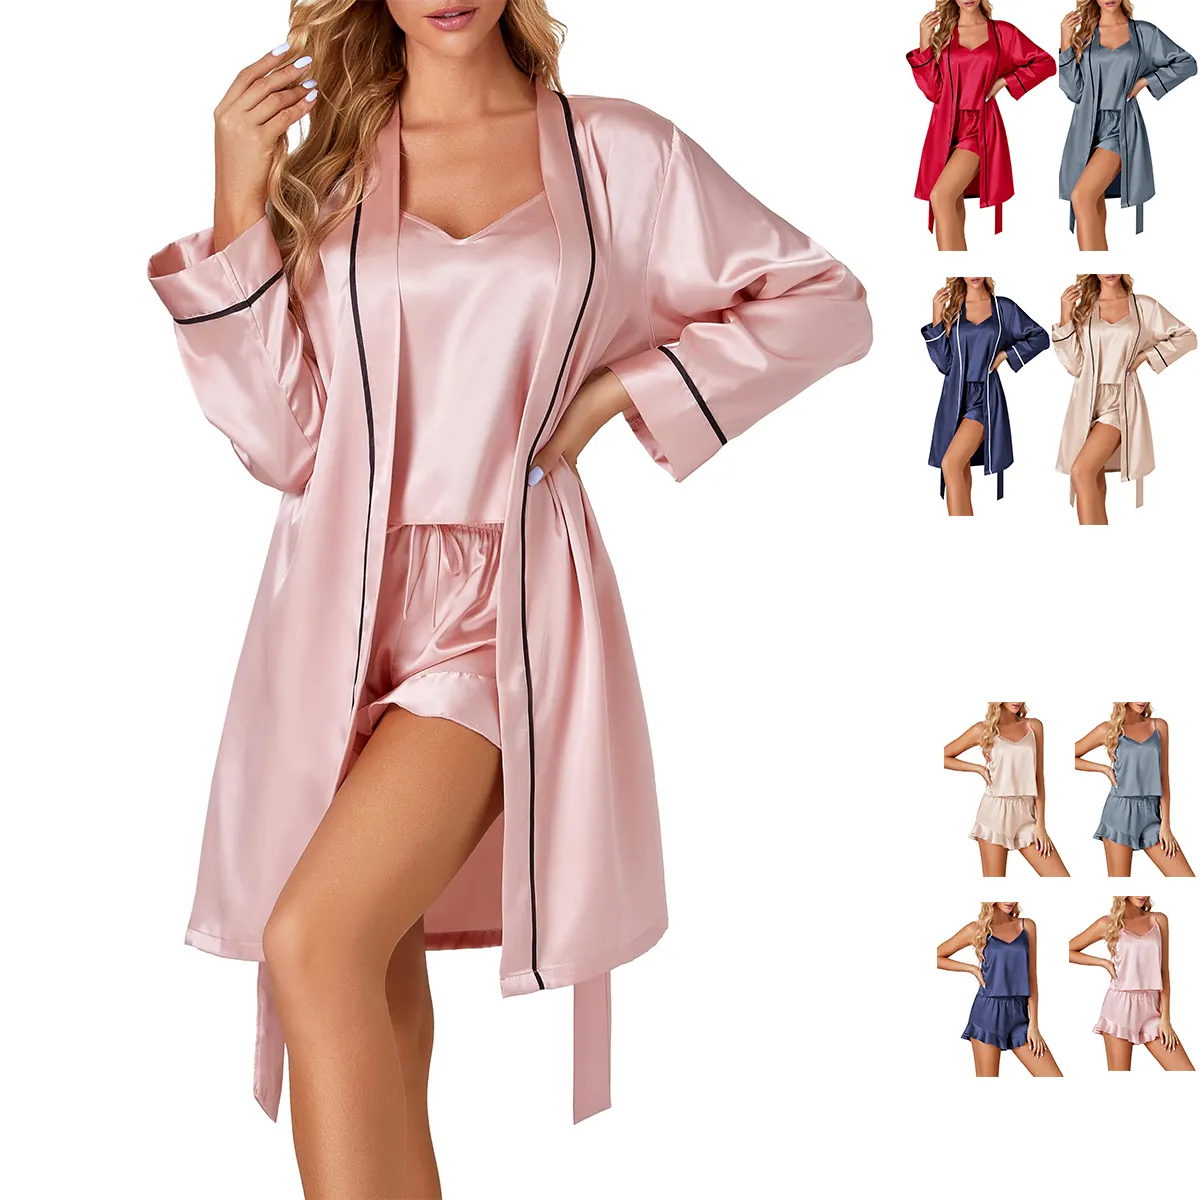 Großhandel Luxus Seide Satin Schlafanzug 3-teilig Shorts Modal Cami-Top Brautbad Party-Kleid Bad Luxus-Pjama-Set für Damen